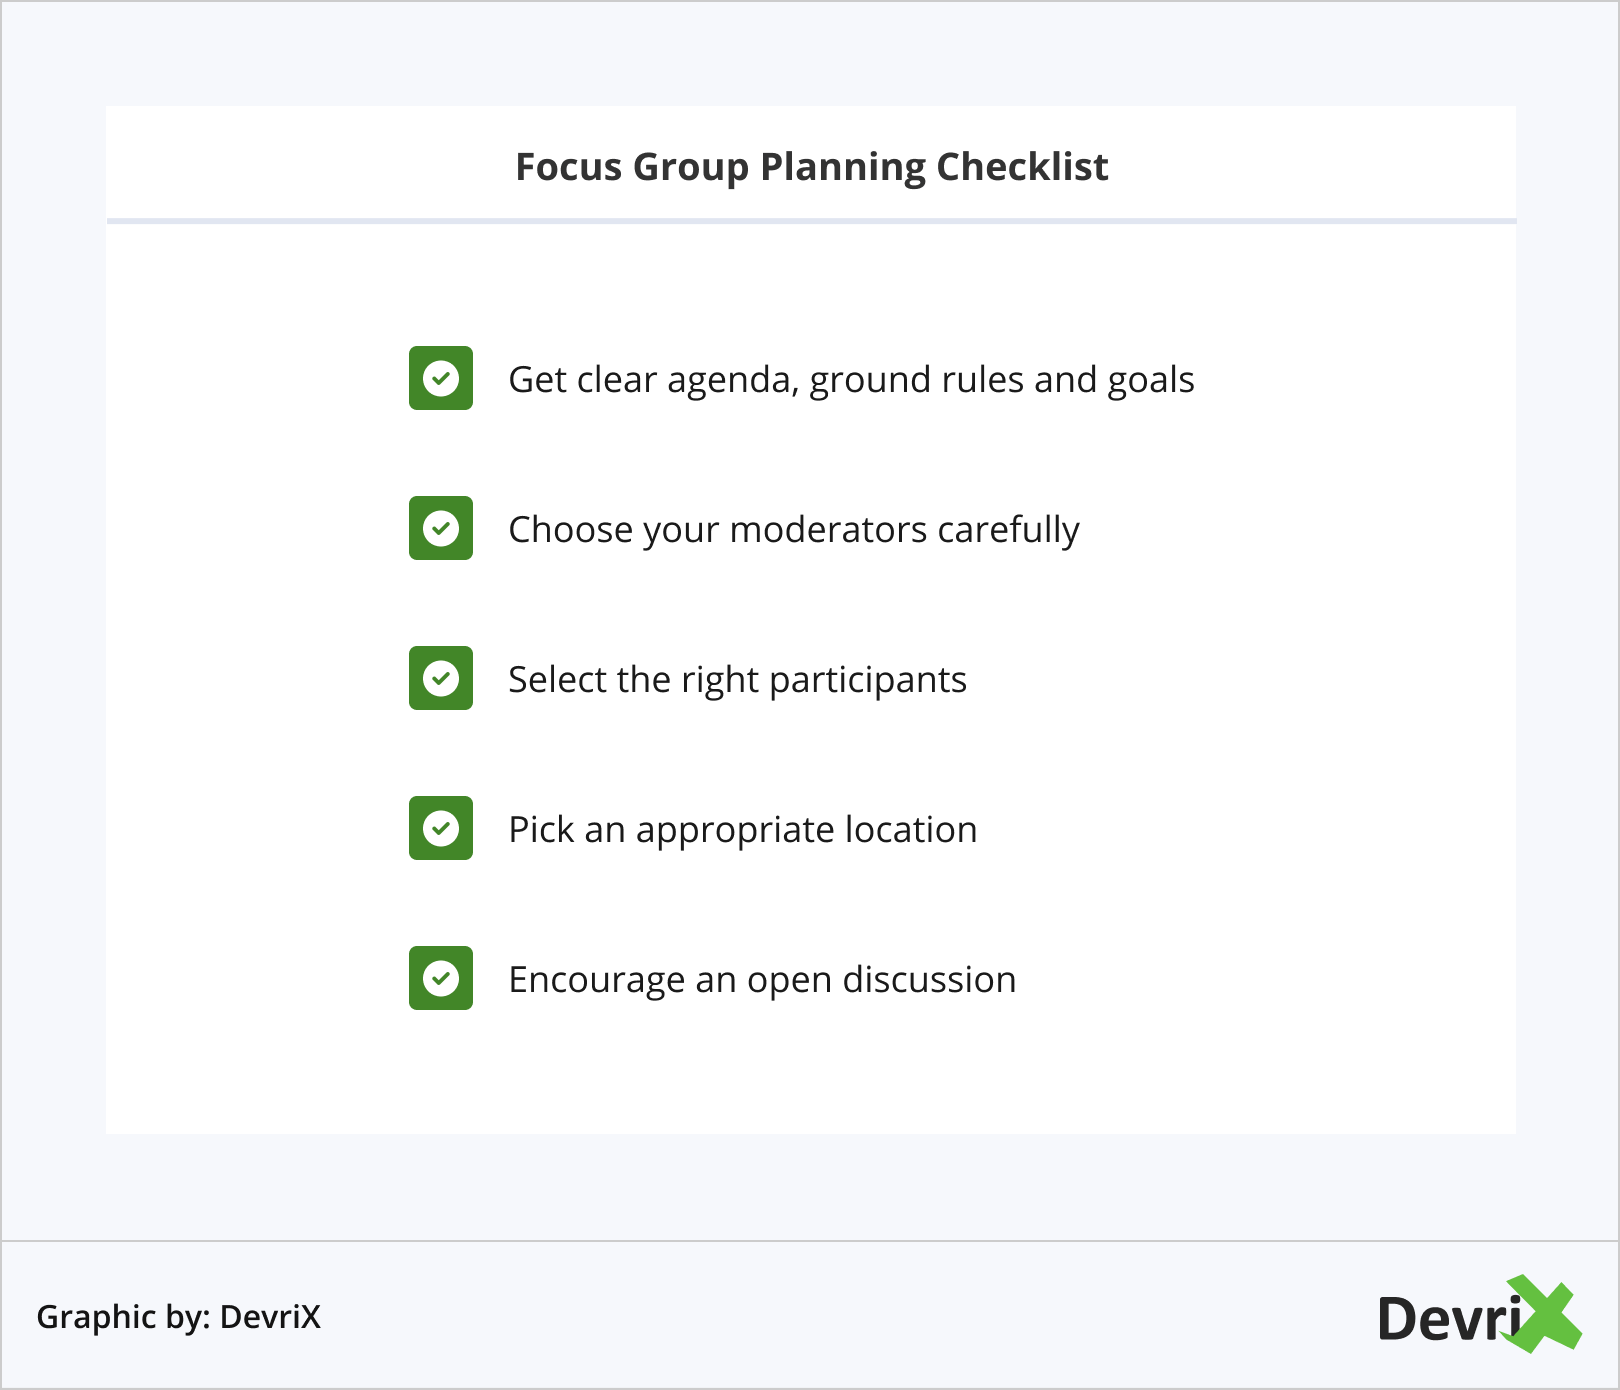 Focus Group Planning Checklist